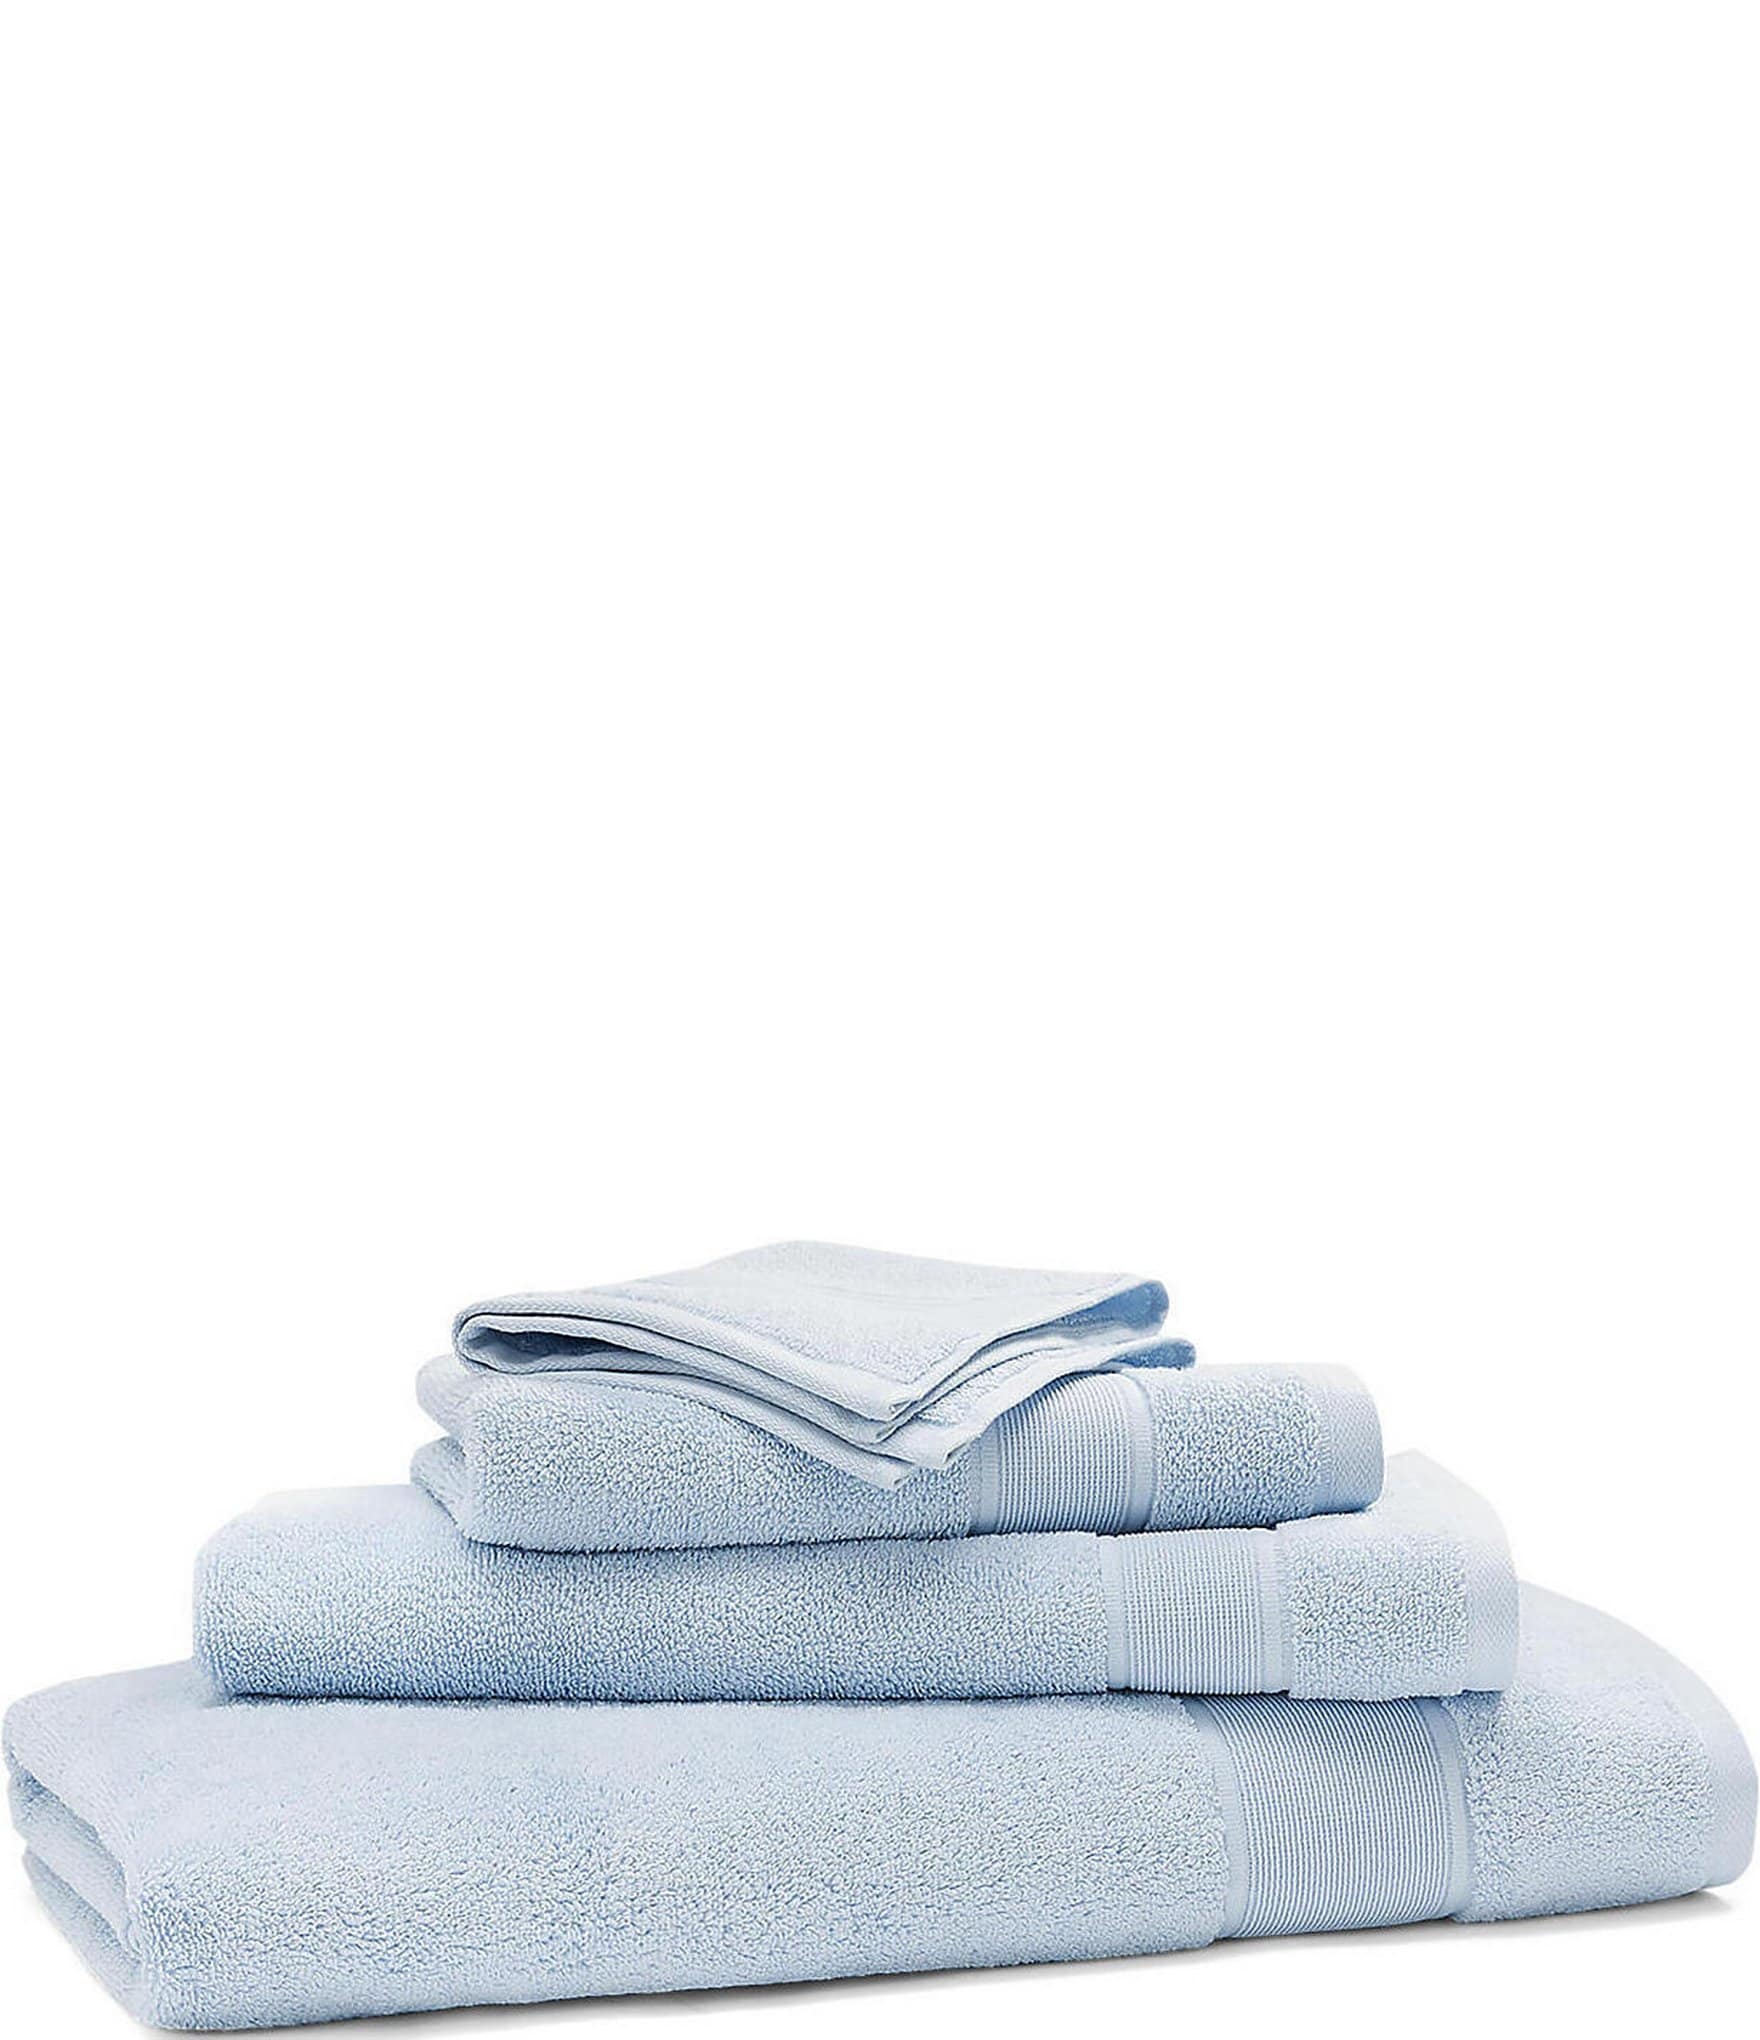 55% Off Lauren Ralph Lauren Bath Towels + FREE Shipping